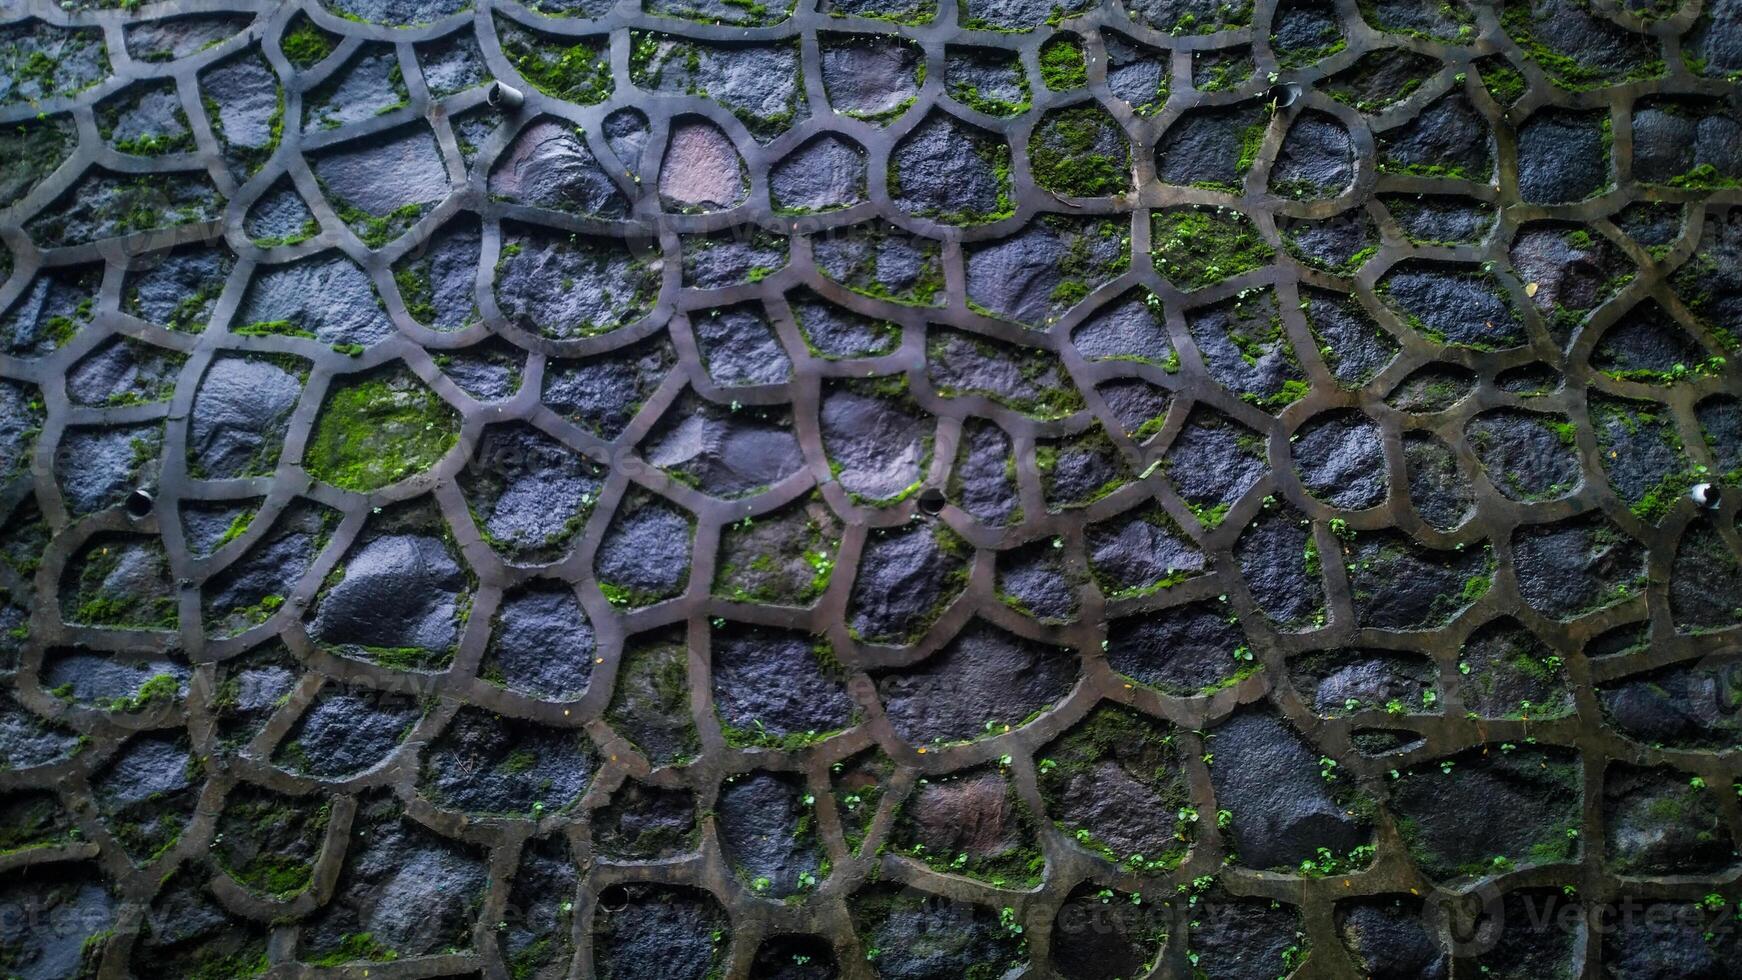 textura de un Roca pared. mojado Roca pared con musgo creciente en Roca foto